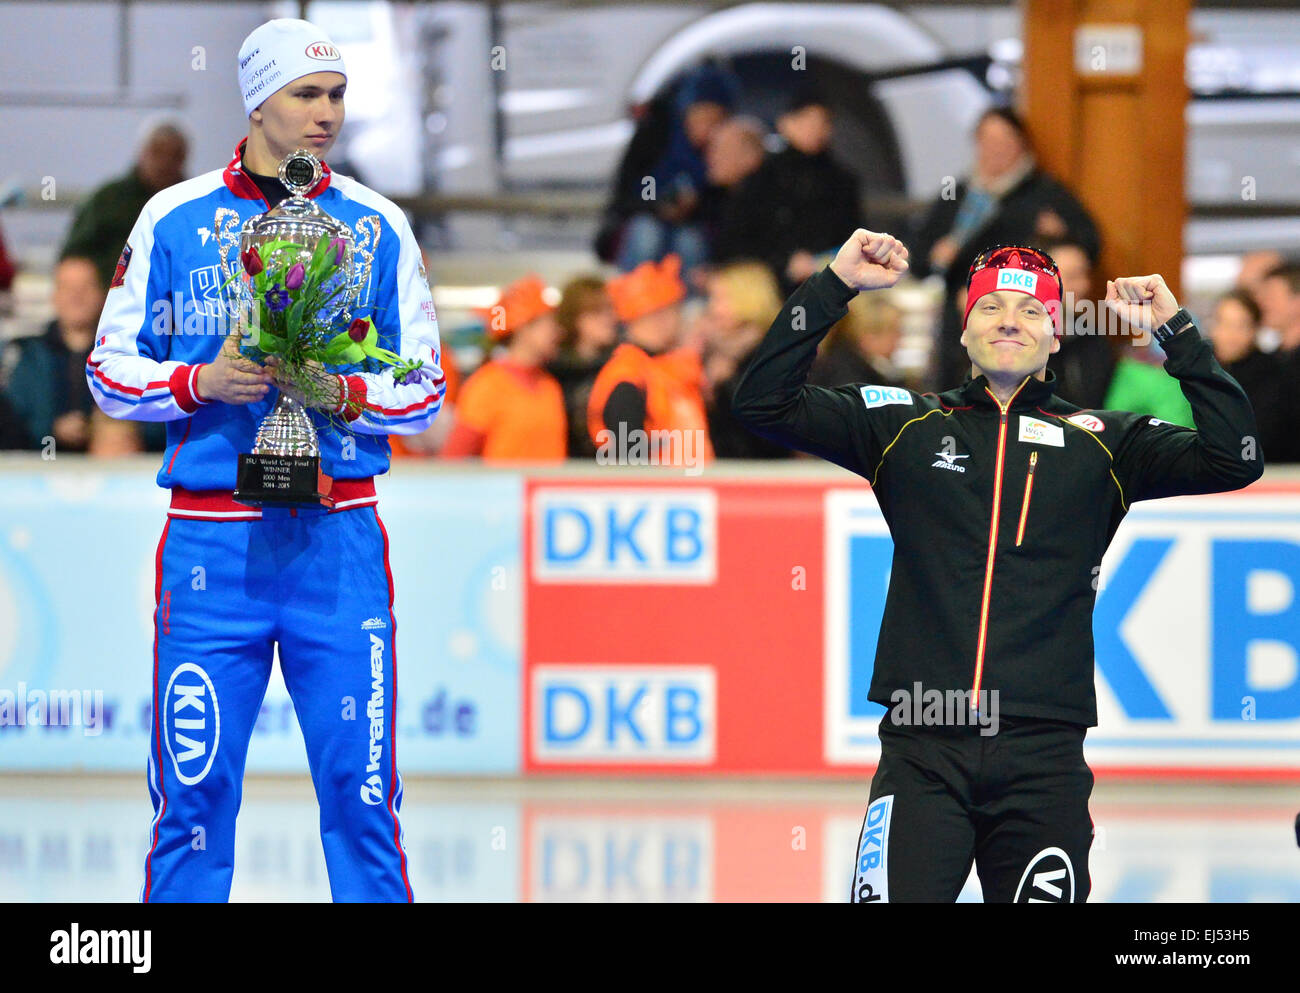 Deutschlands Nico Ihle (r) feiert seinen 3. Platz in der 100 Meter von der Eisschnelllauf-WM in Erfurt, Deutschland 21. März 2015. Auf der linken Seite, der Gewinner des russischen Pavel Kulizhnikov. Foto: MARTIN SCHUTT/dpa Stockfoto